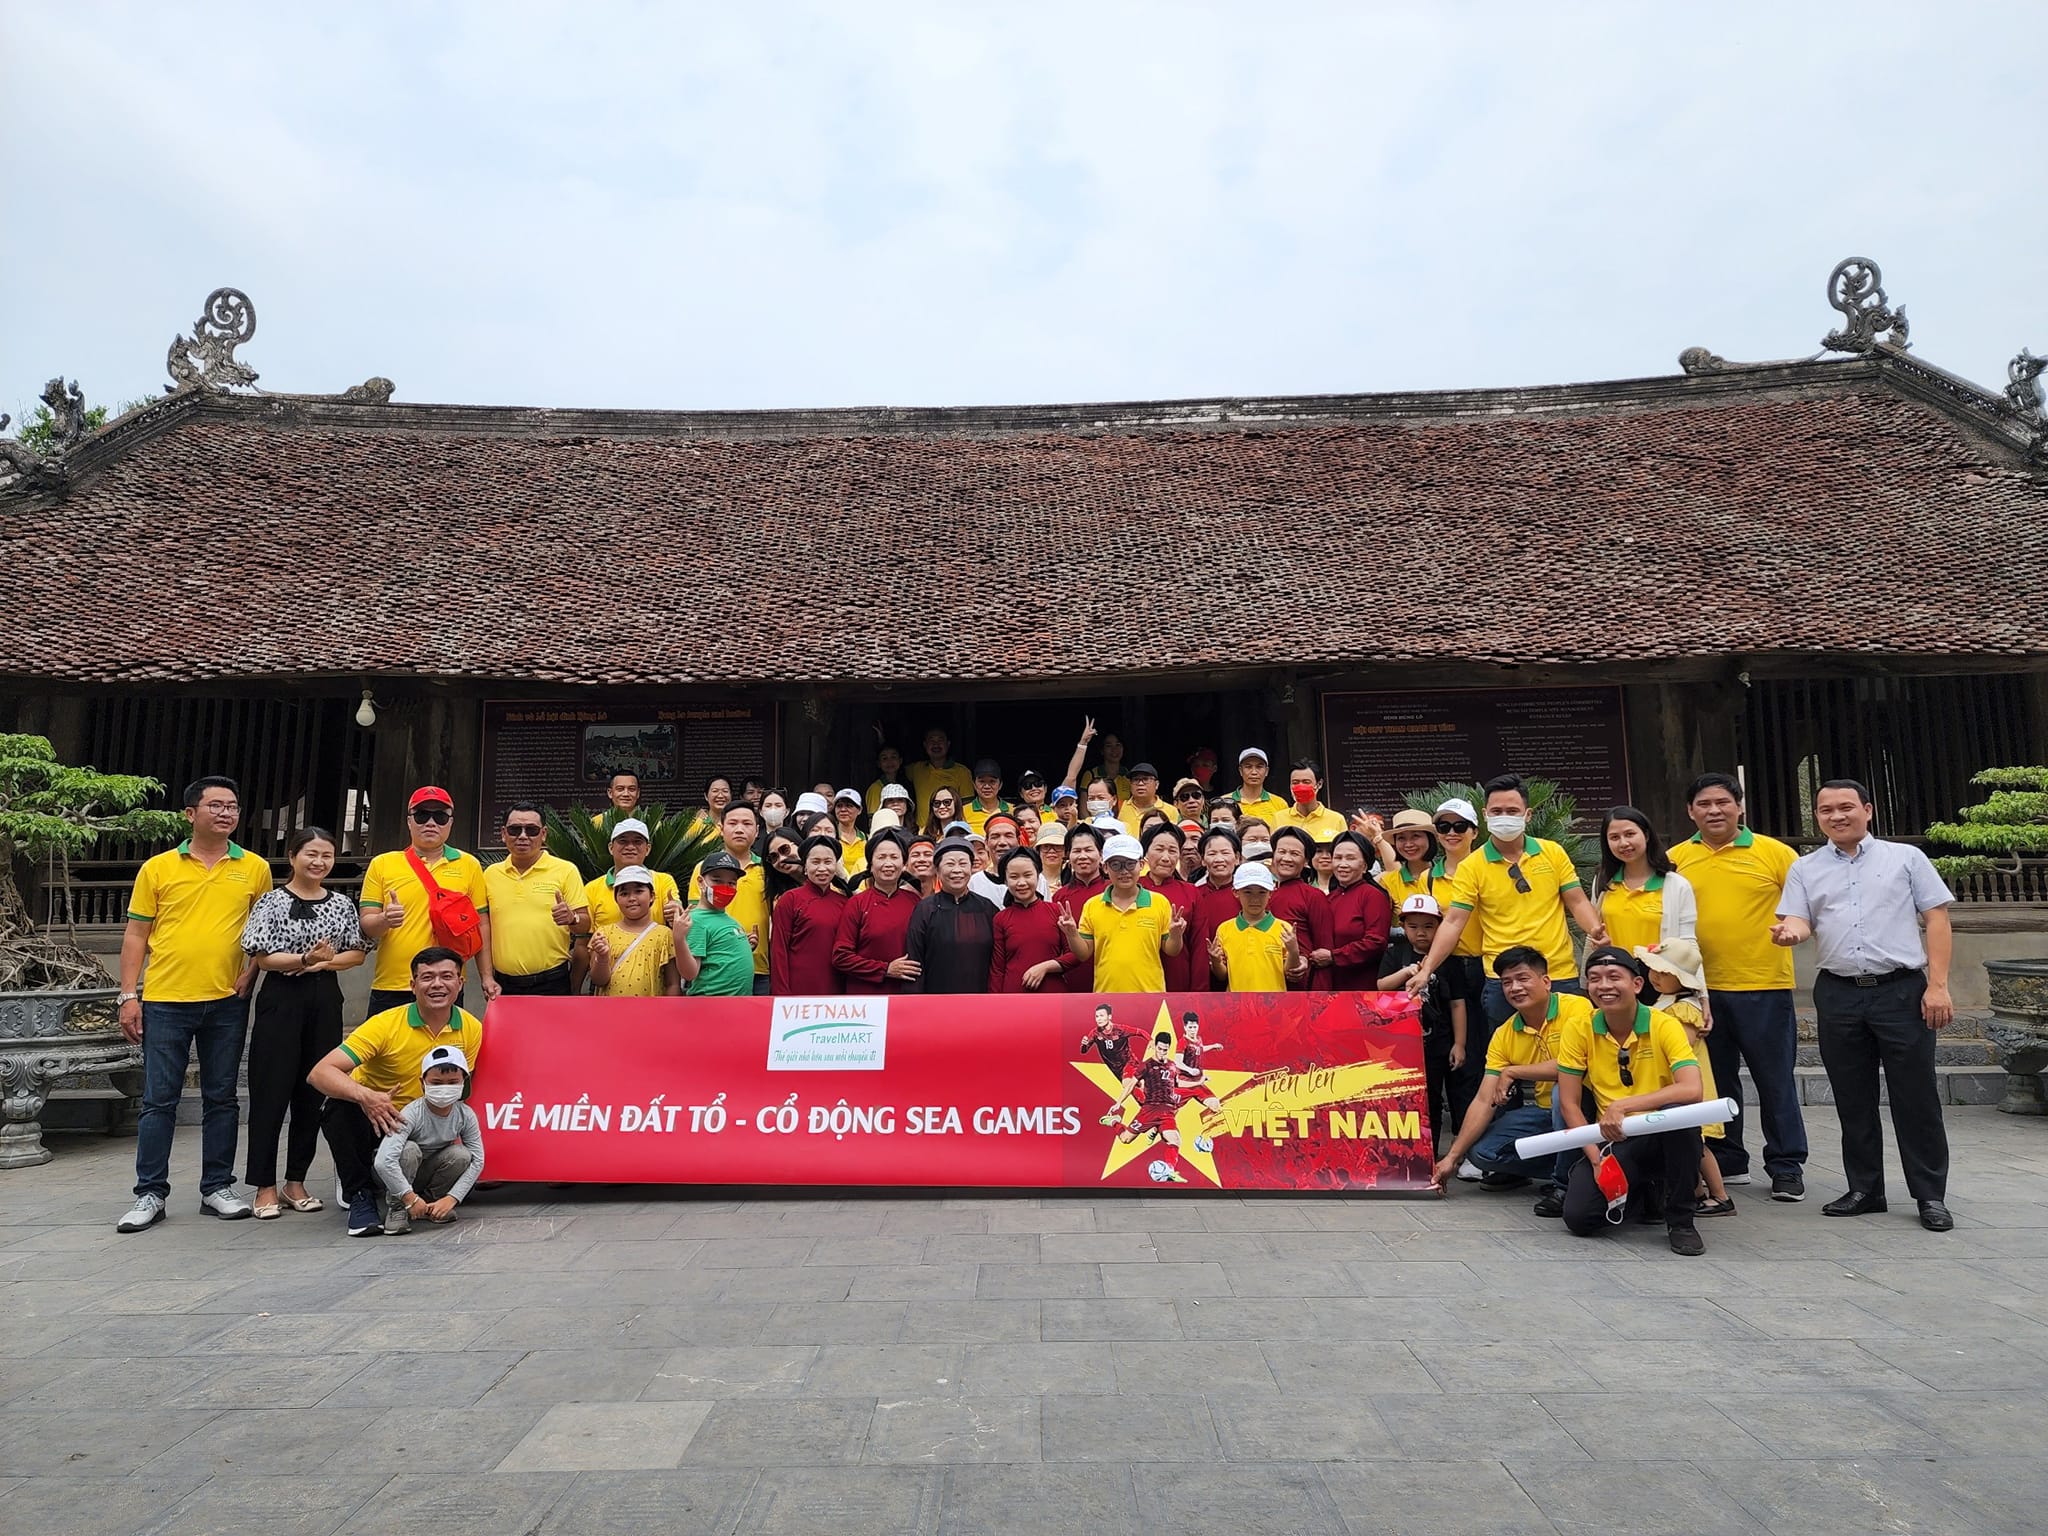 Du lịch Phú Thọ đón đoàn khách du lịch Đà Nẵng tham quan tại tỉnh Phú Thọ dịp SEA Games 31